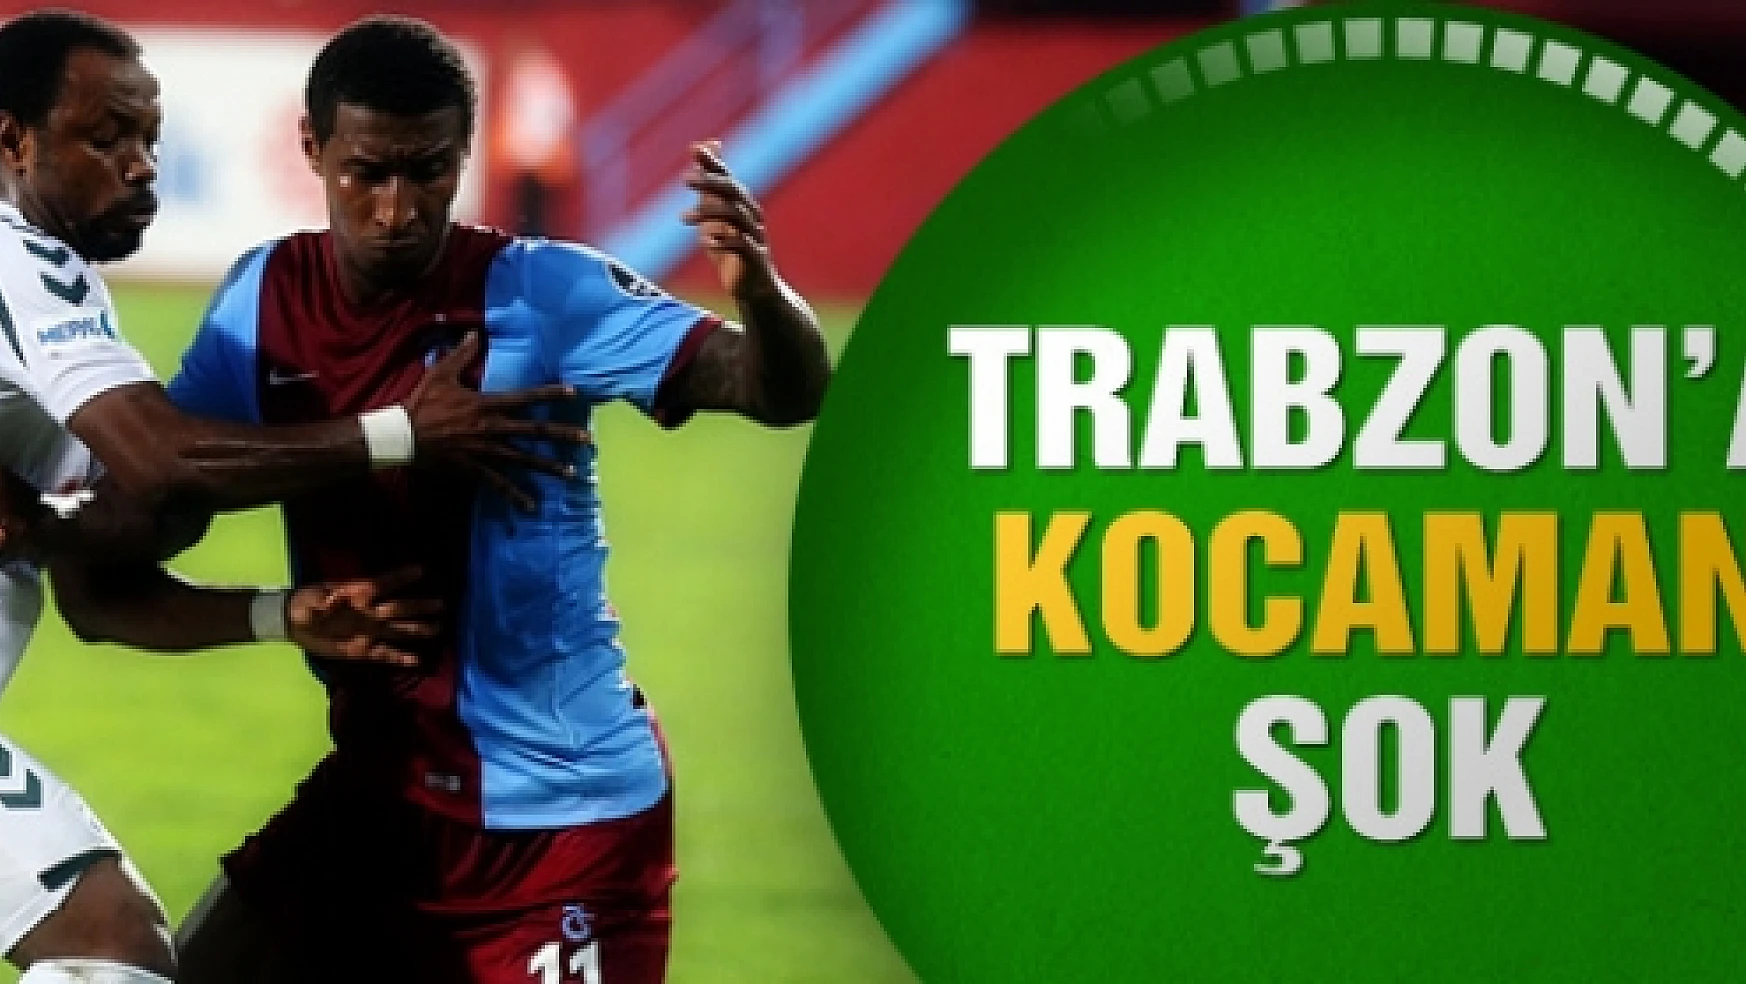 Trabzon'a Kocaman şok! 3 gol 1 penaltı